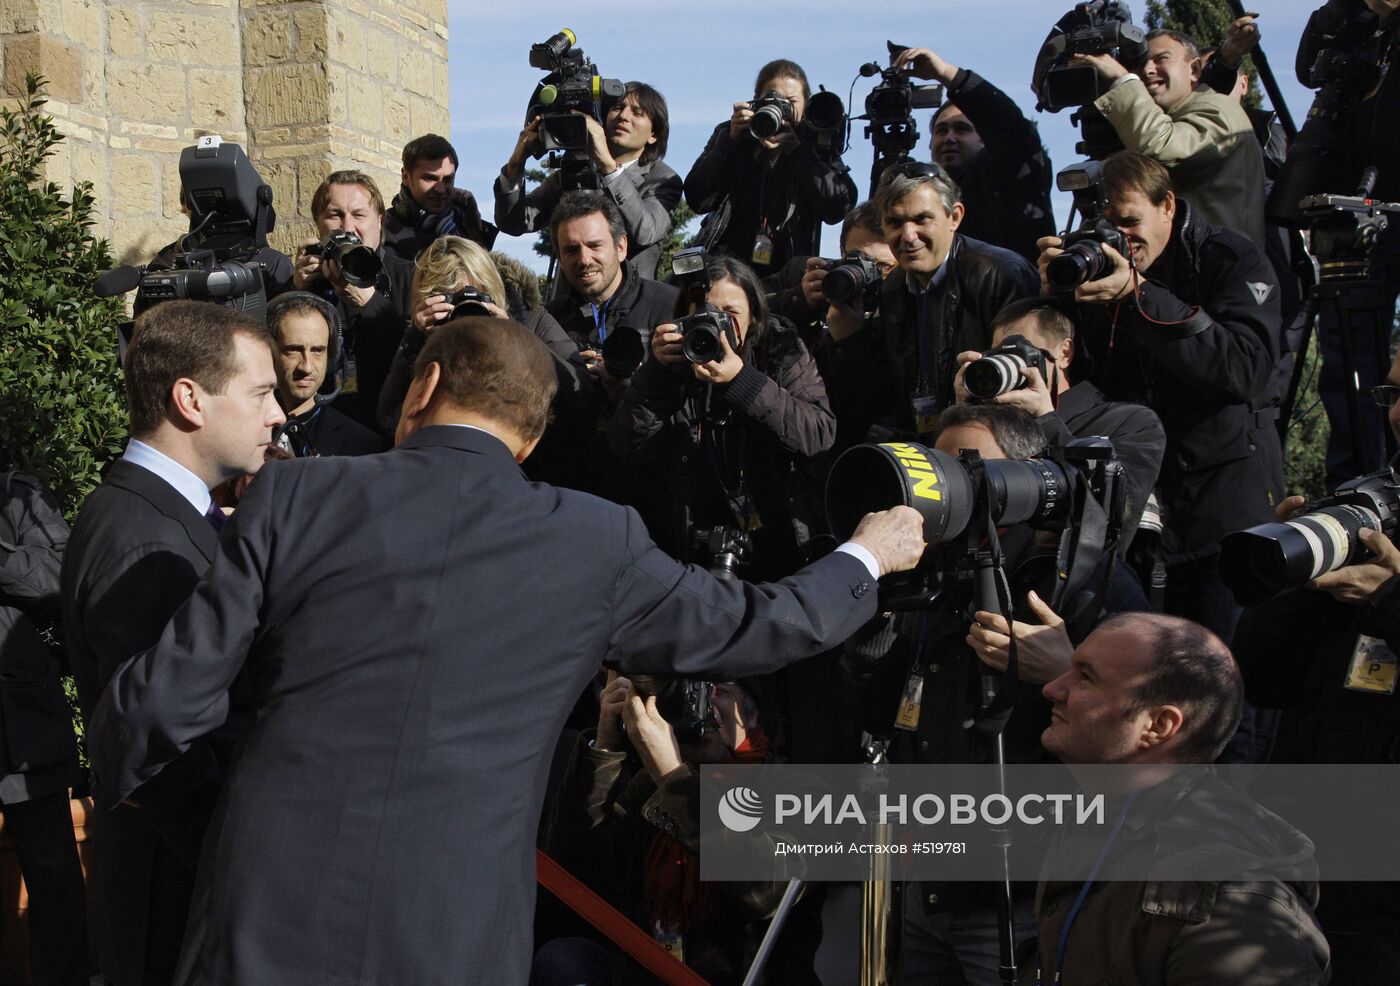 Д.Медведев на церемонии официальной встречи в Риме